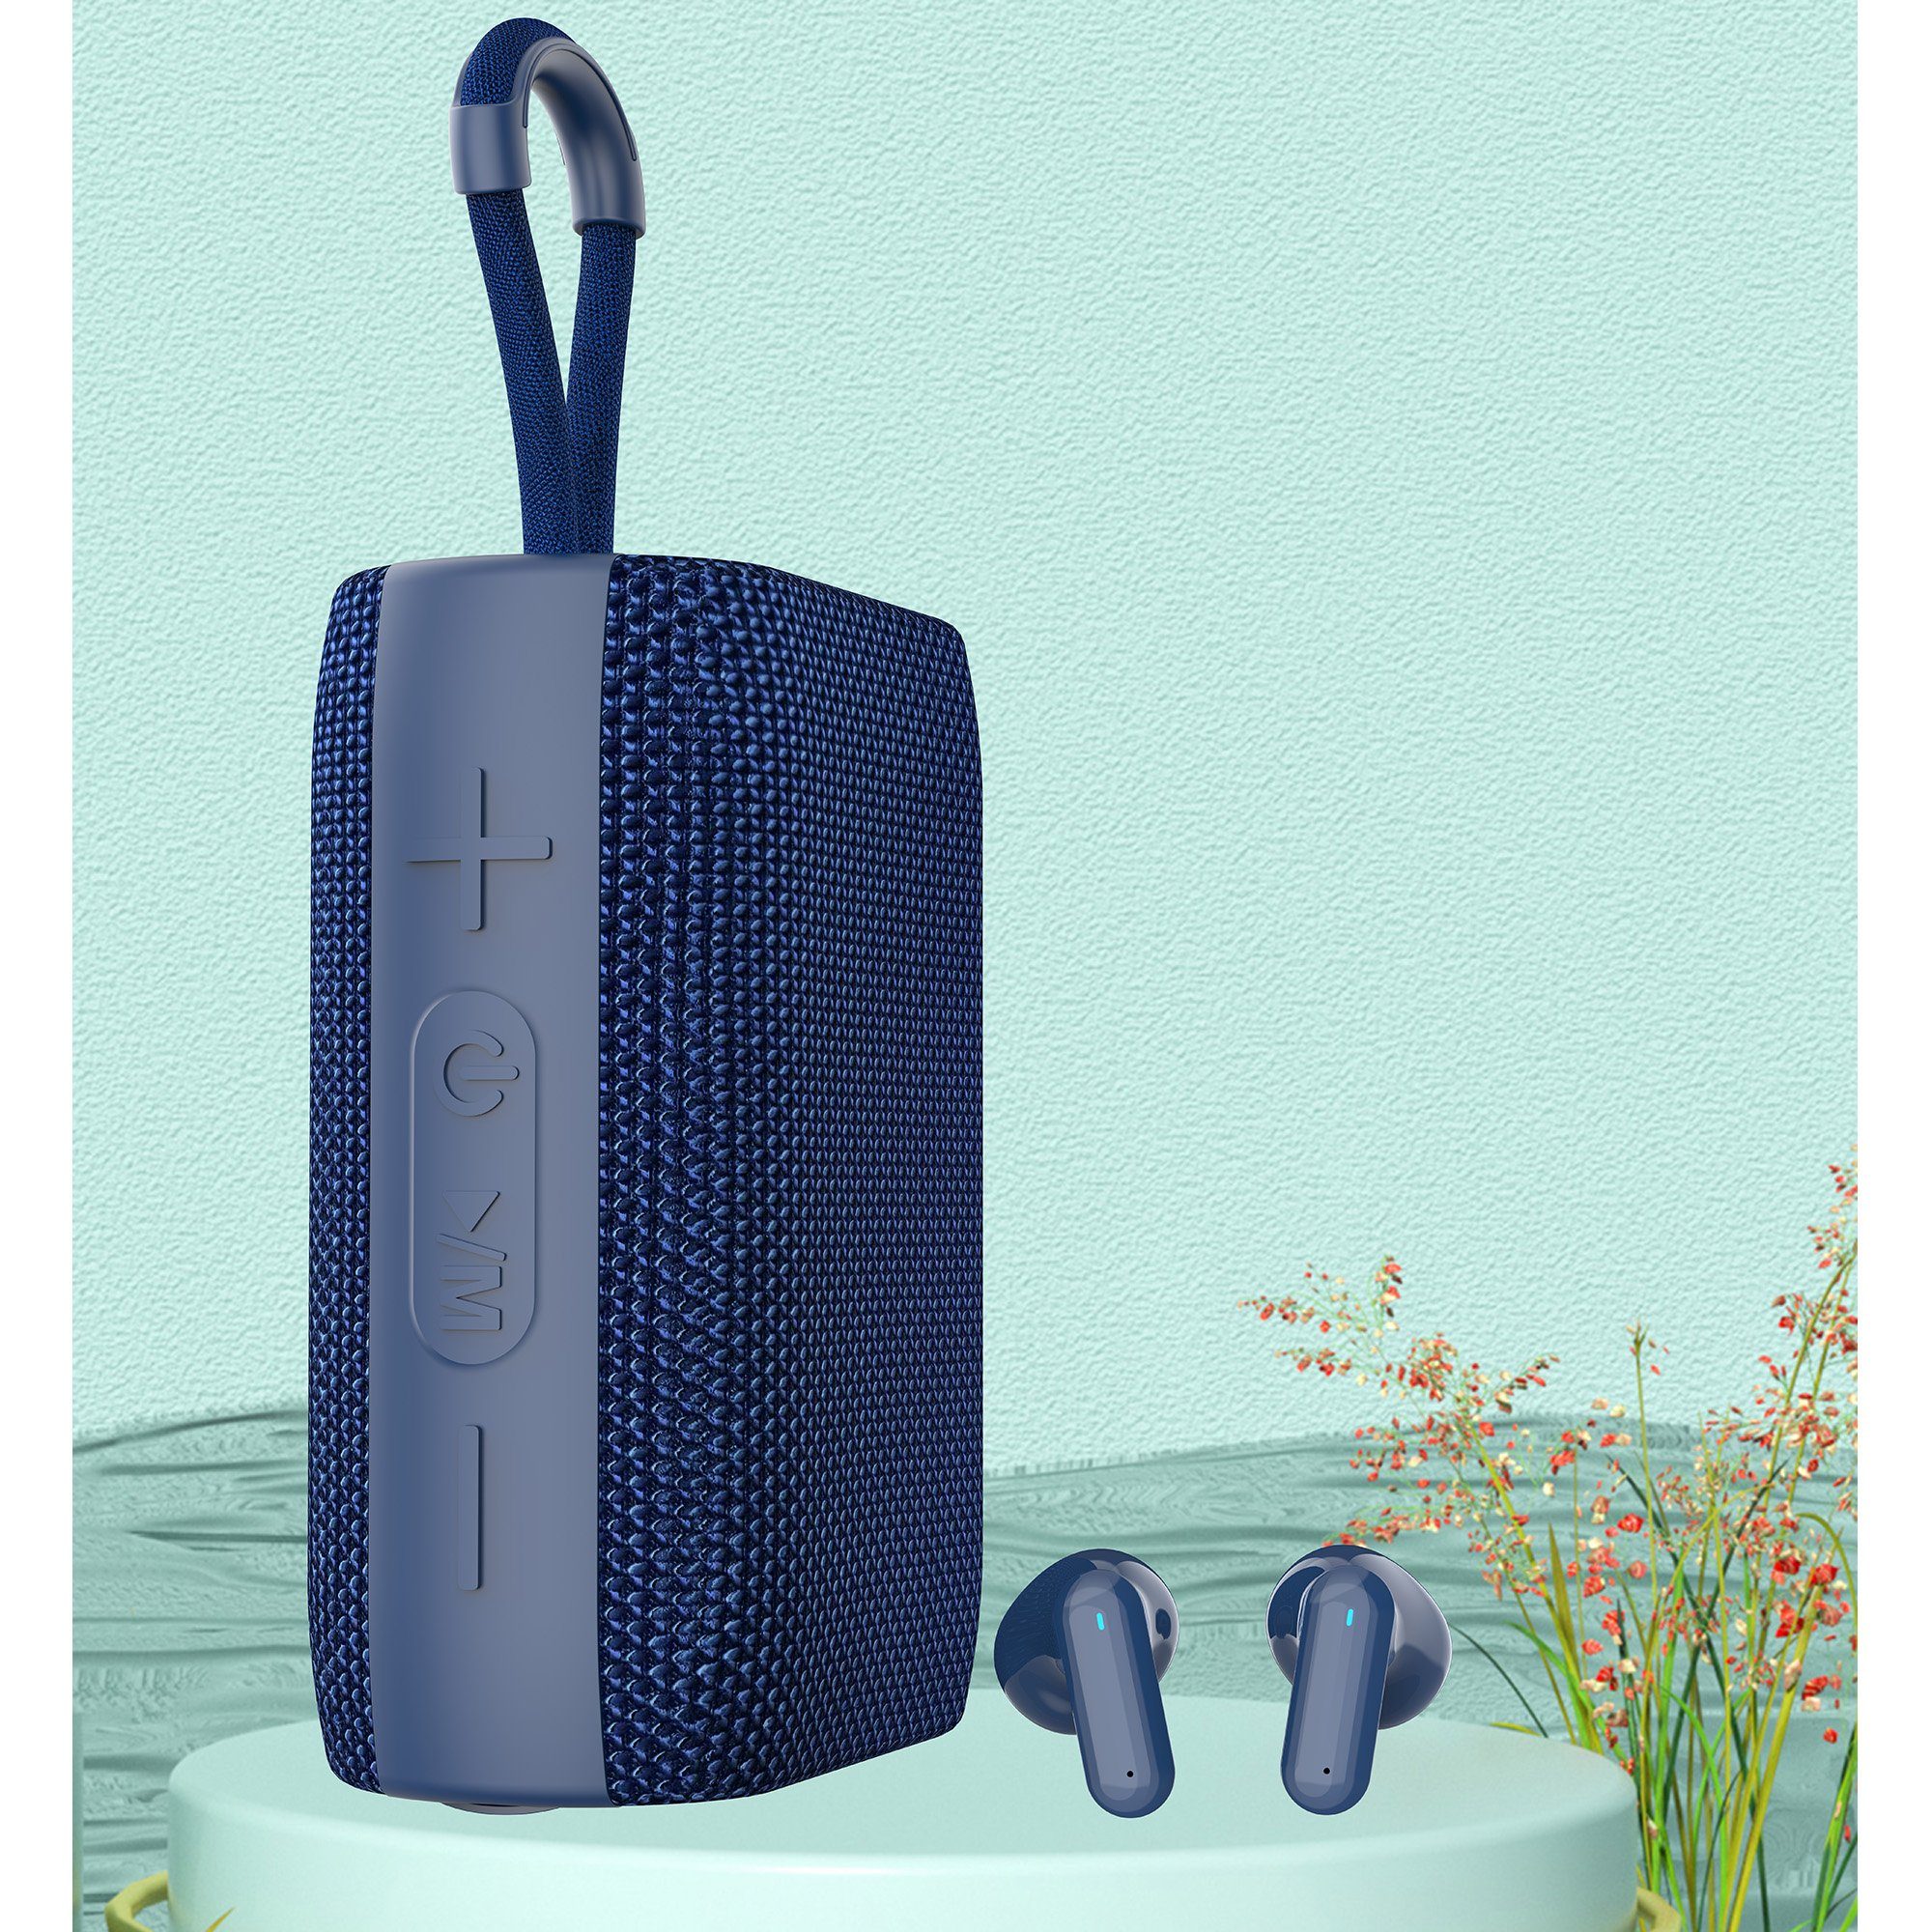 IBETTER Bluetooth Lautsprecher,Portable Lautsprecher Lautsprecher,FM-Tuner,TF Lautsprecher Card, (Kabelloses Lieferumfang enthalten) Bluetooth-Headset AUX im